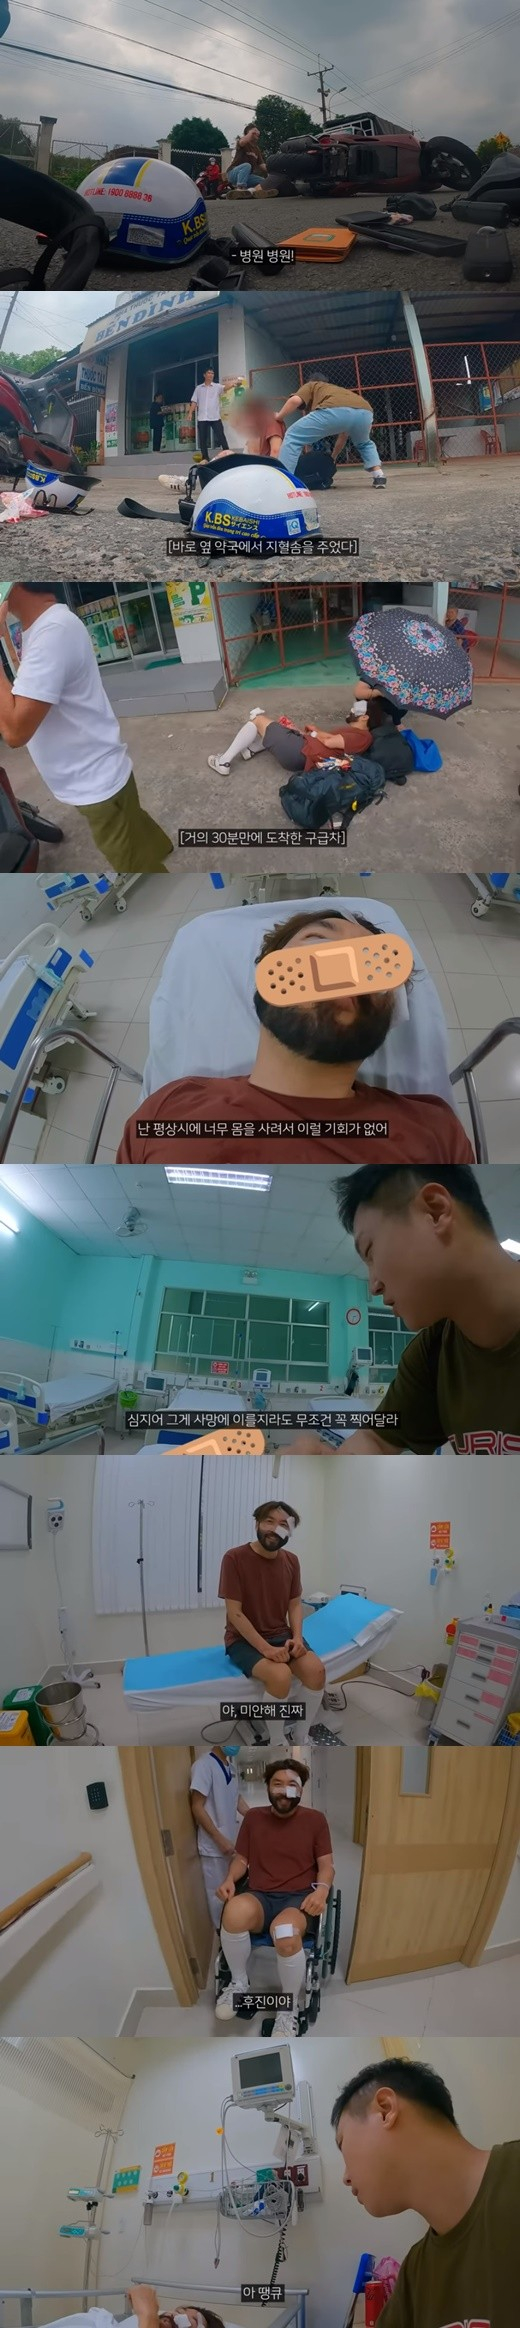 방송인 노홍철이 유튜버 빠니보틀과 베트남 여행 중 또 한 번 아찔한 교통사고를 당했다. /사진=빠니보틀 유튜브 캡처